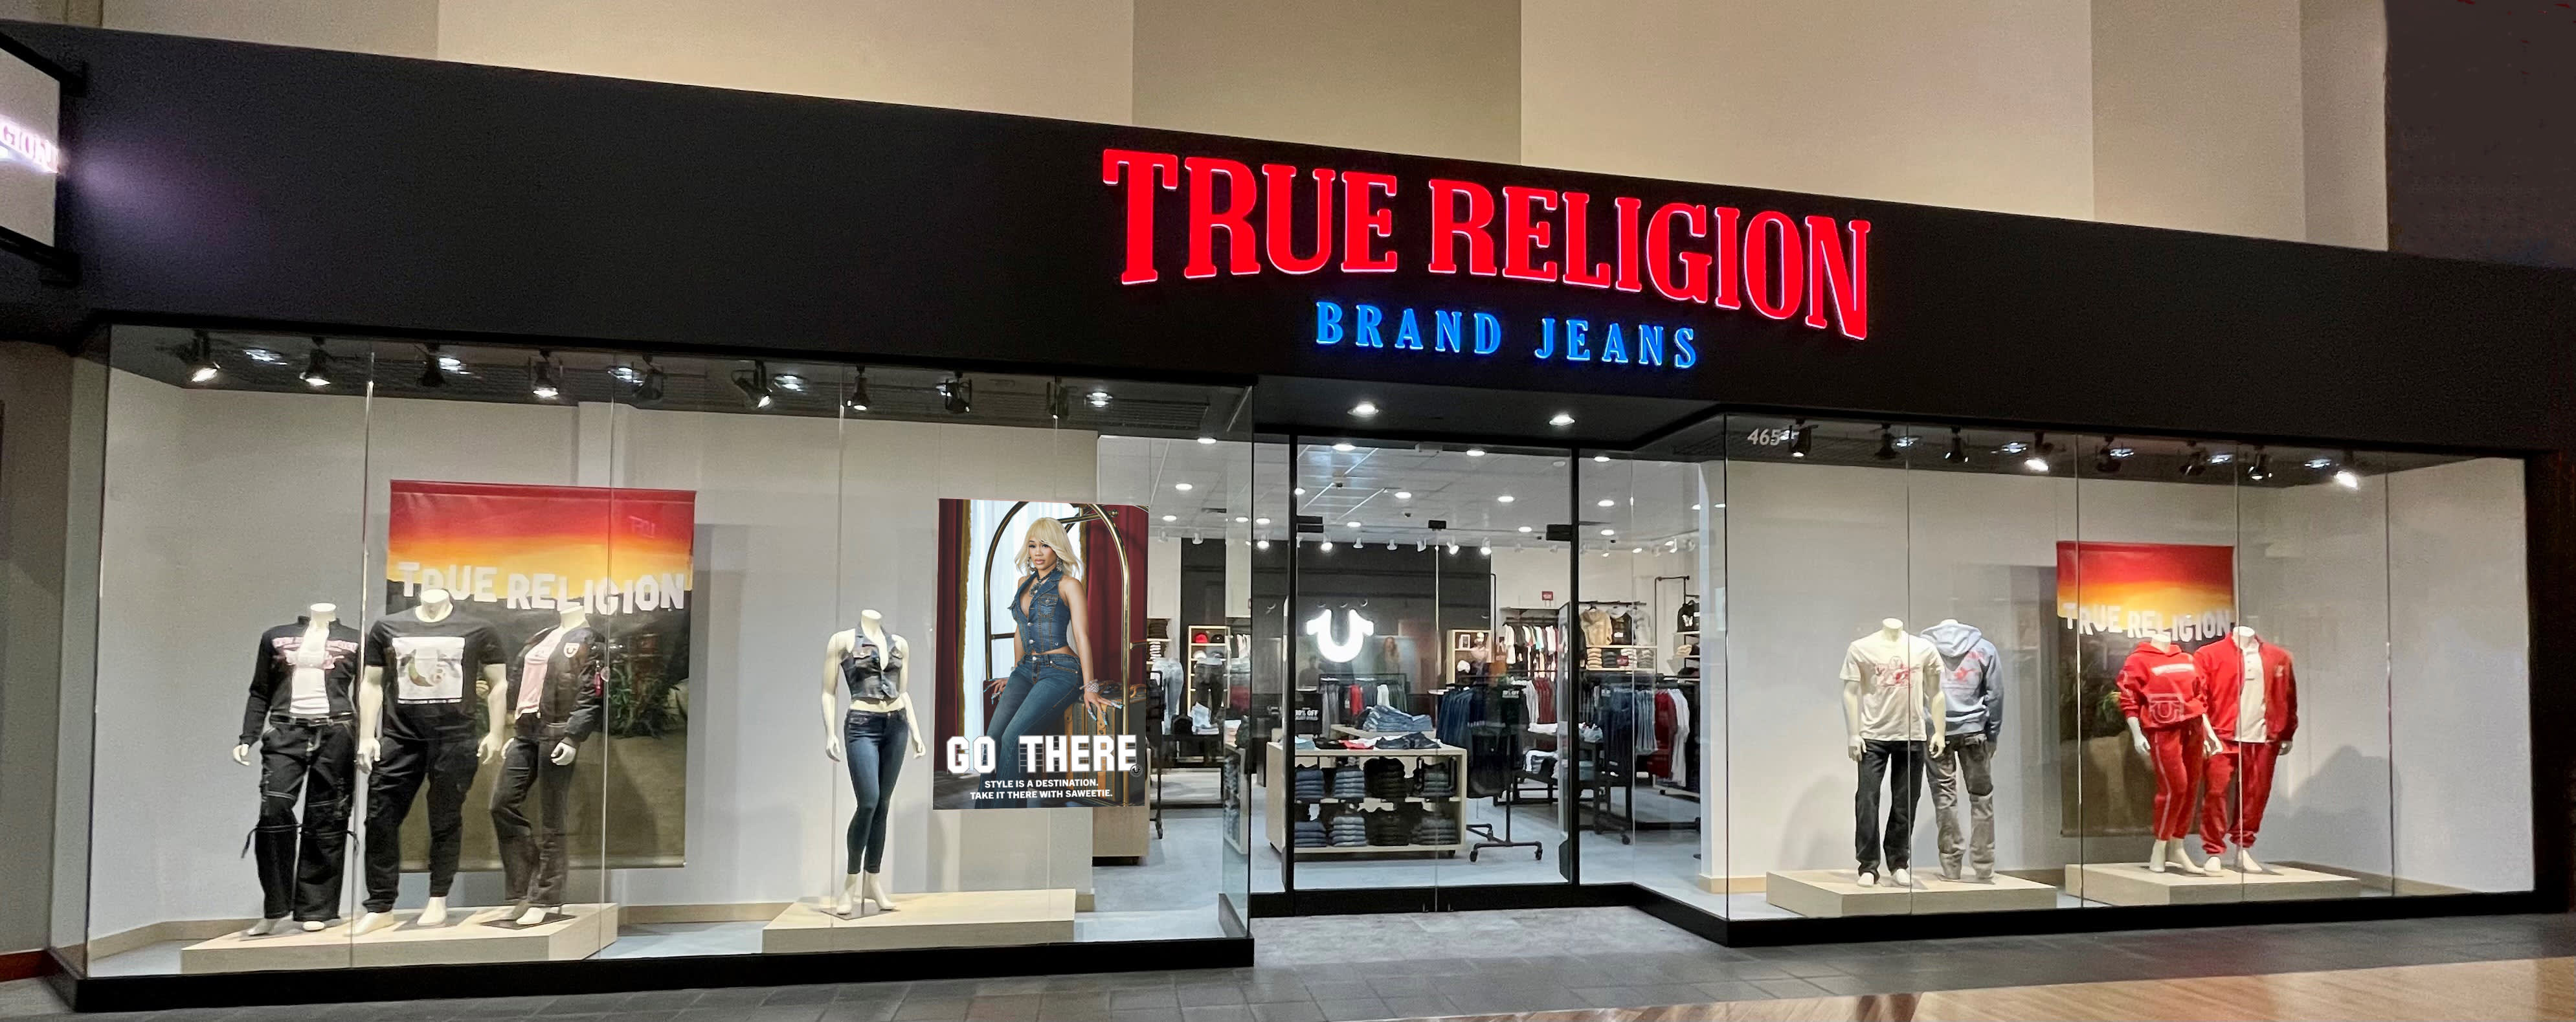 Die Jeansmarke True Religion prüft einen Ausverkauf